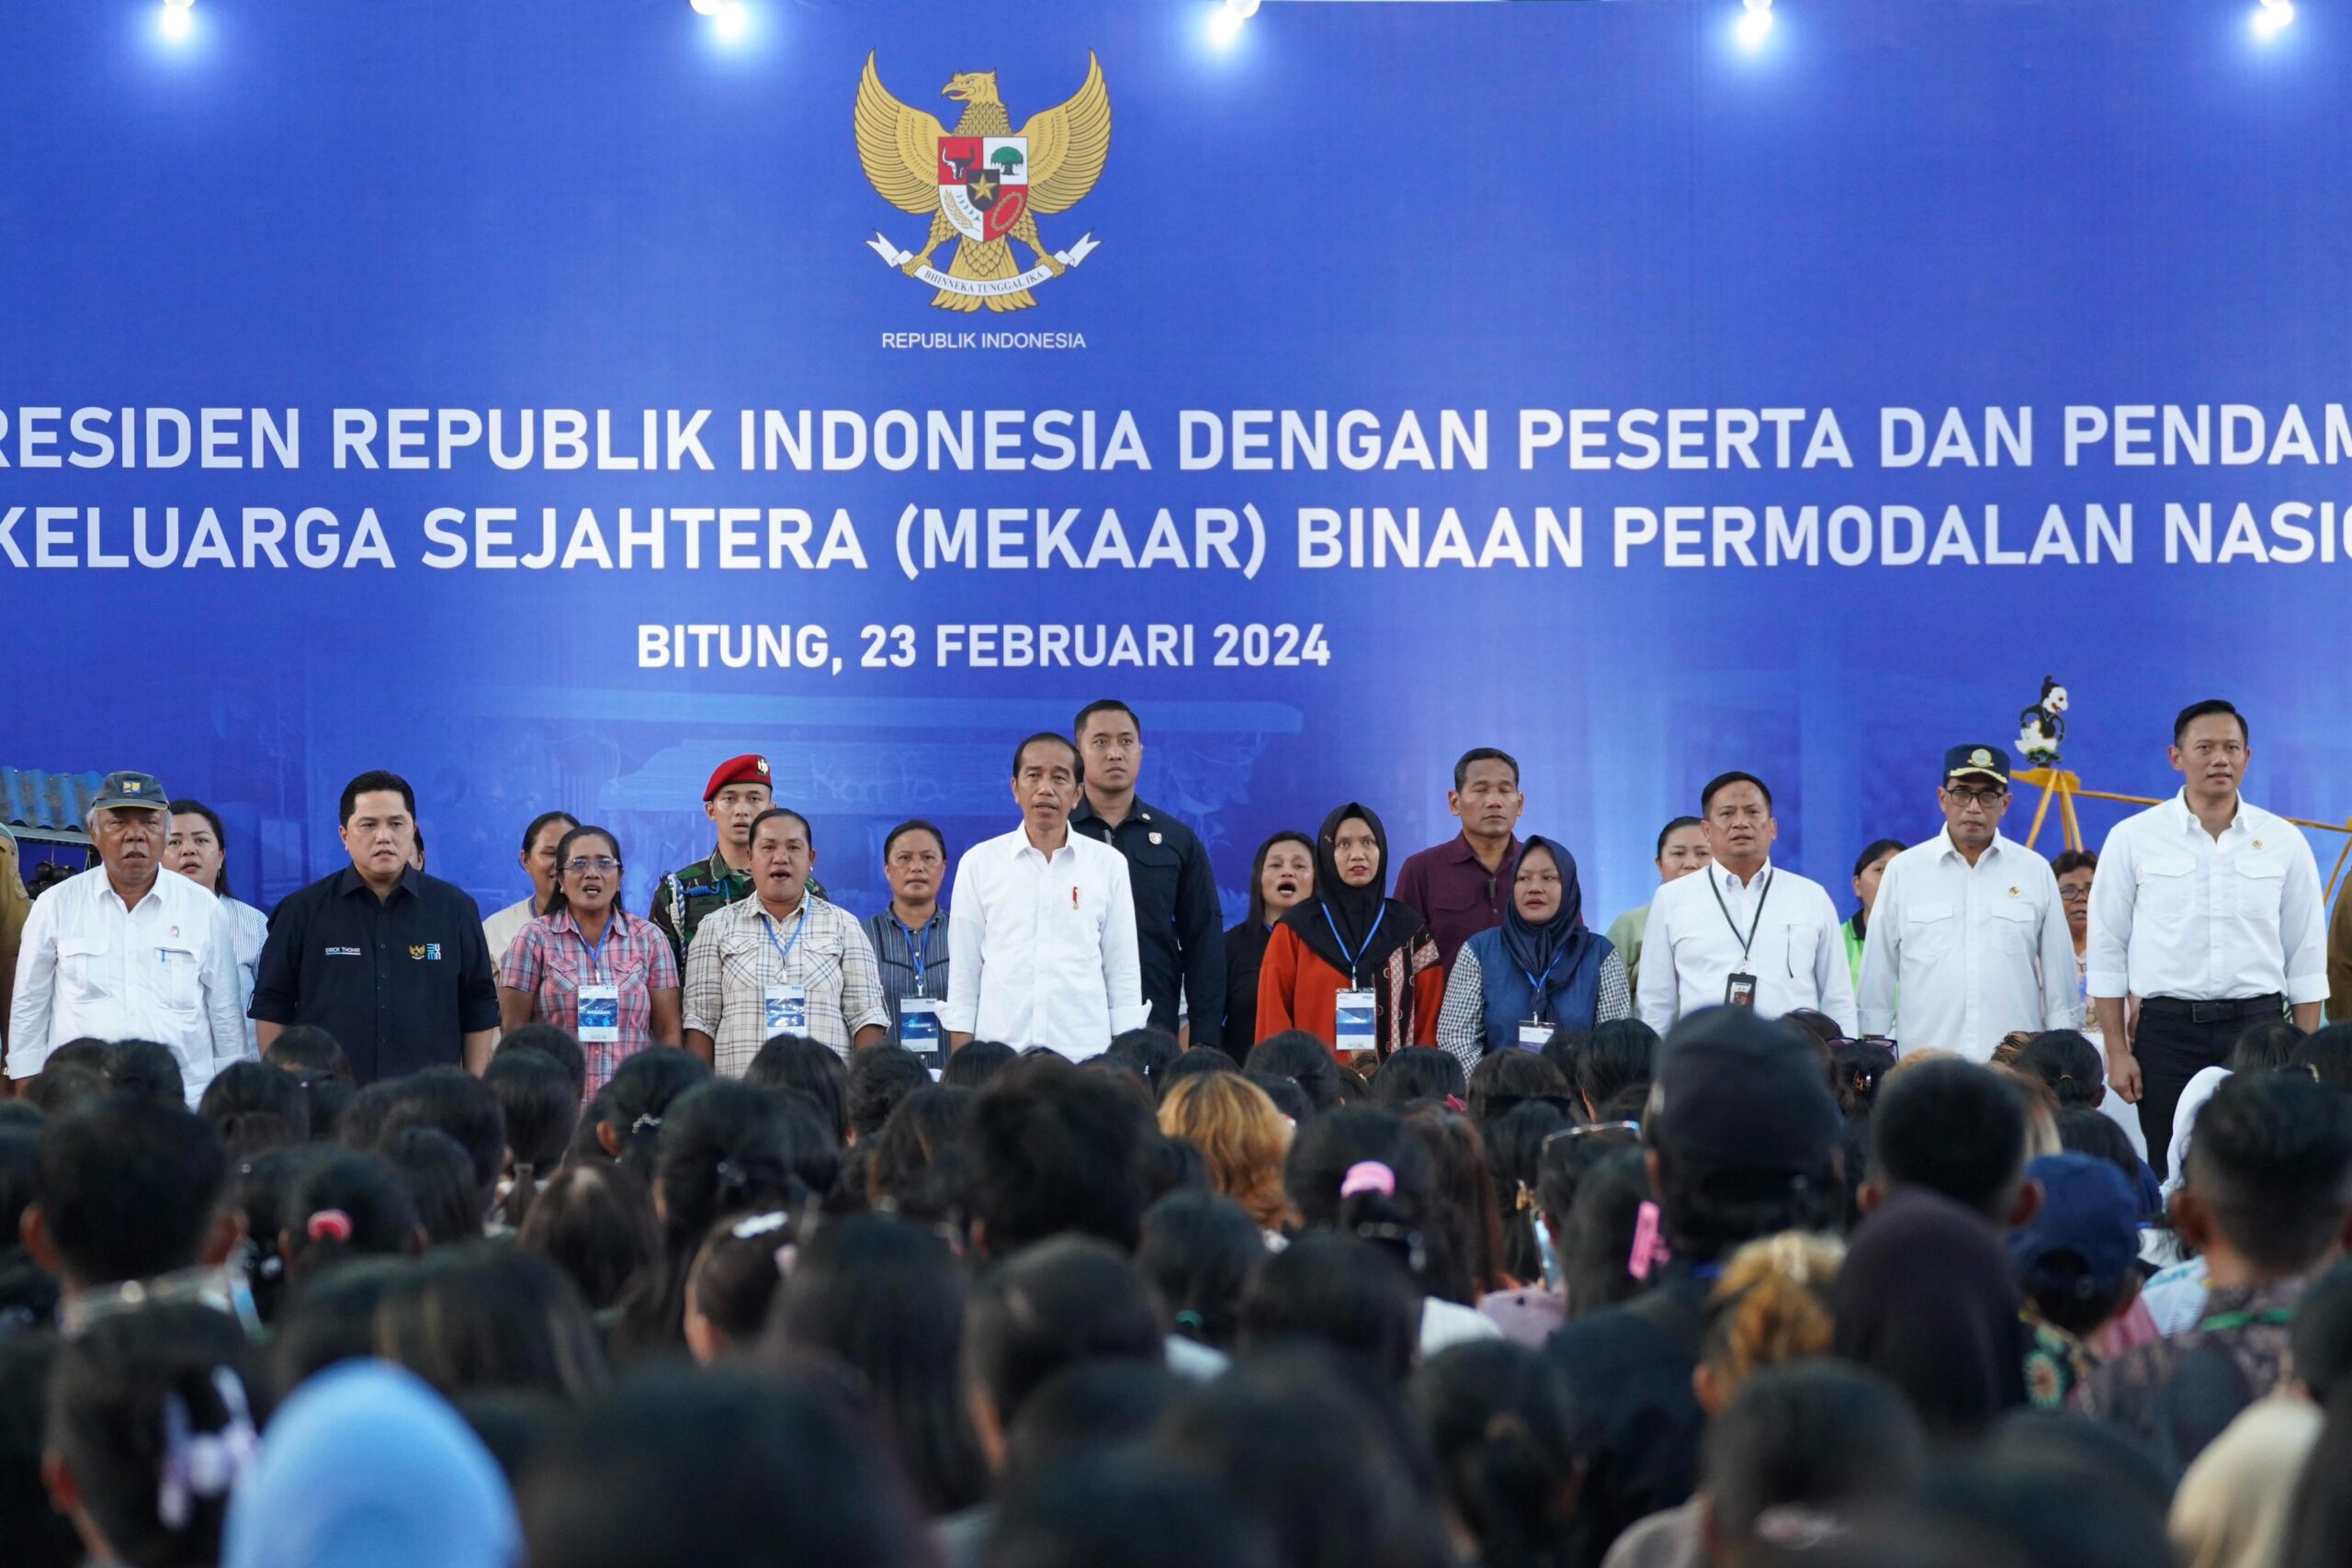 Jokowi Silaturahmi Bersama Nasabah Mekaar PNM di Sulut, Ini Pesan untuk Pelaku UKM